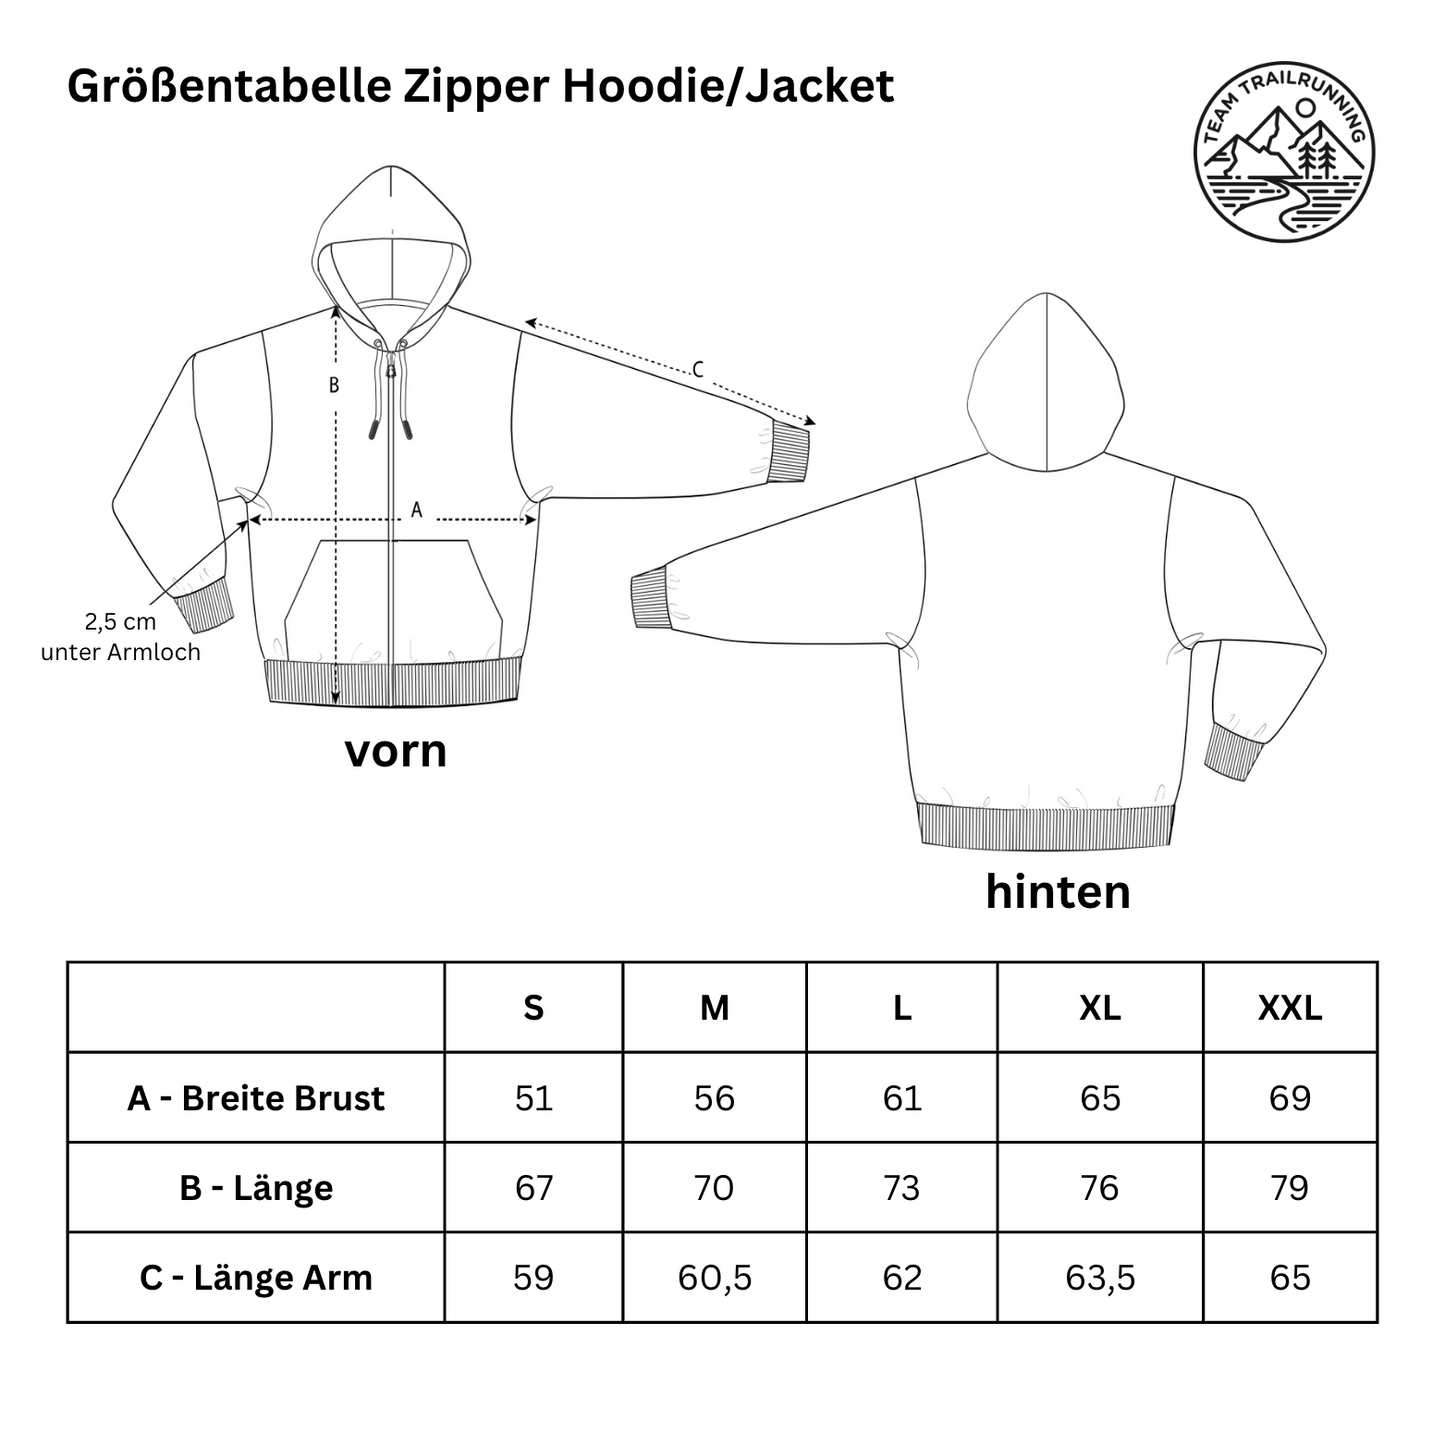 Sunday Trailrunning Club - Premium Zipper Hoodie Jacket